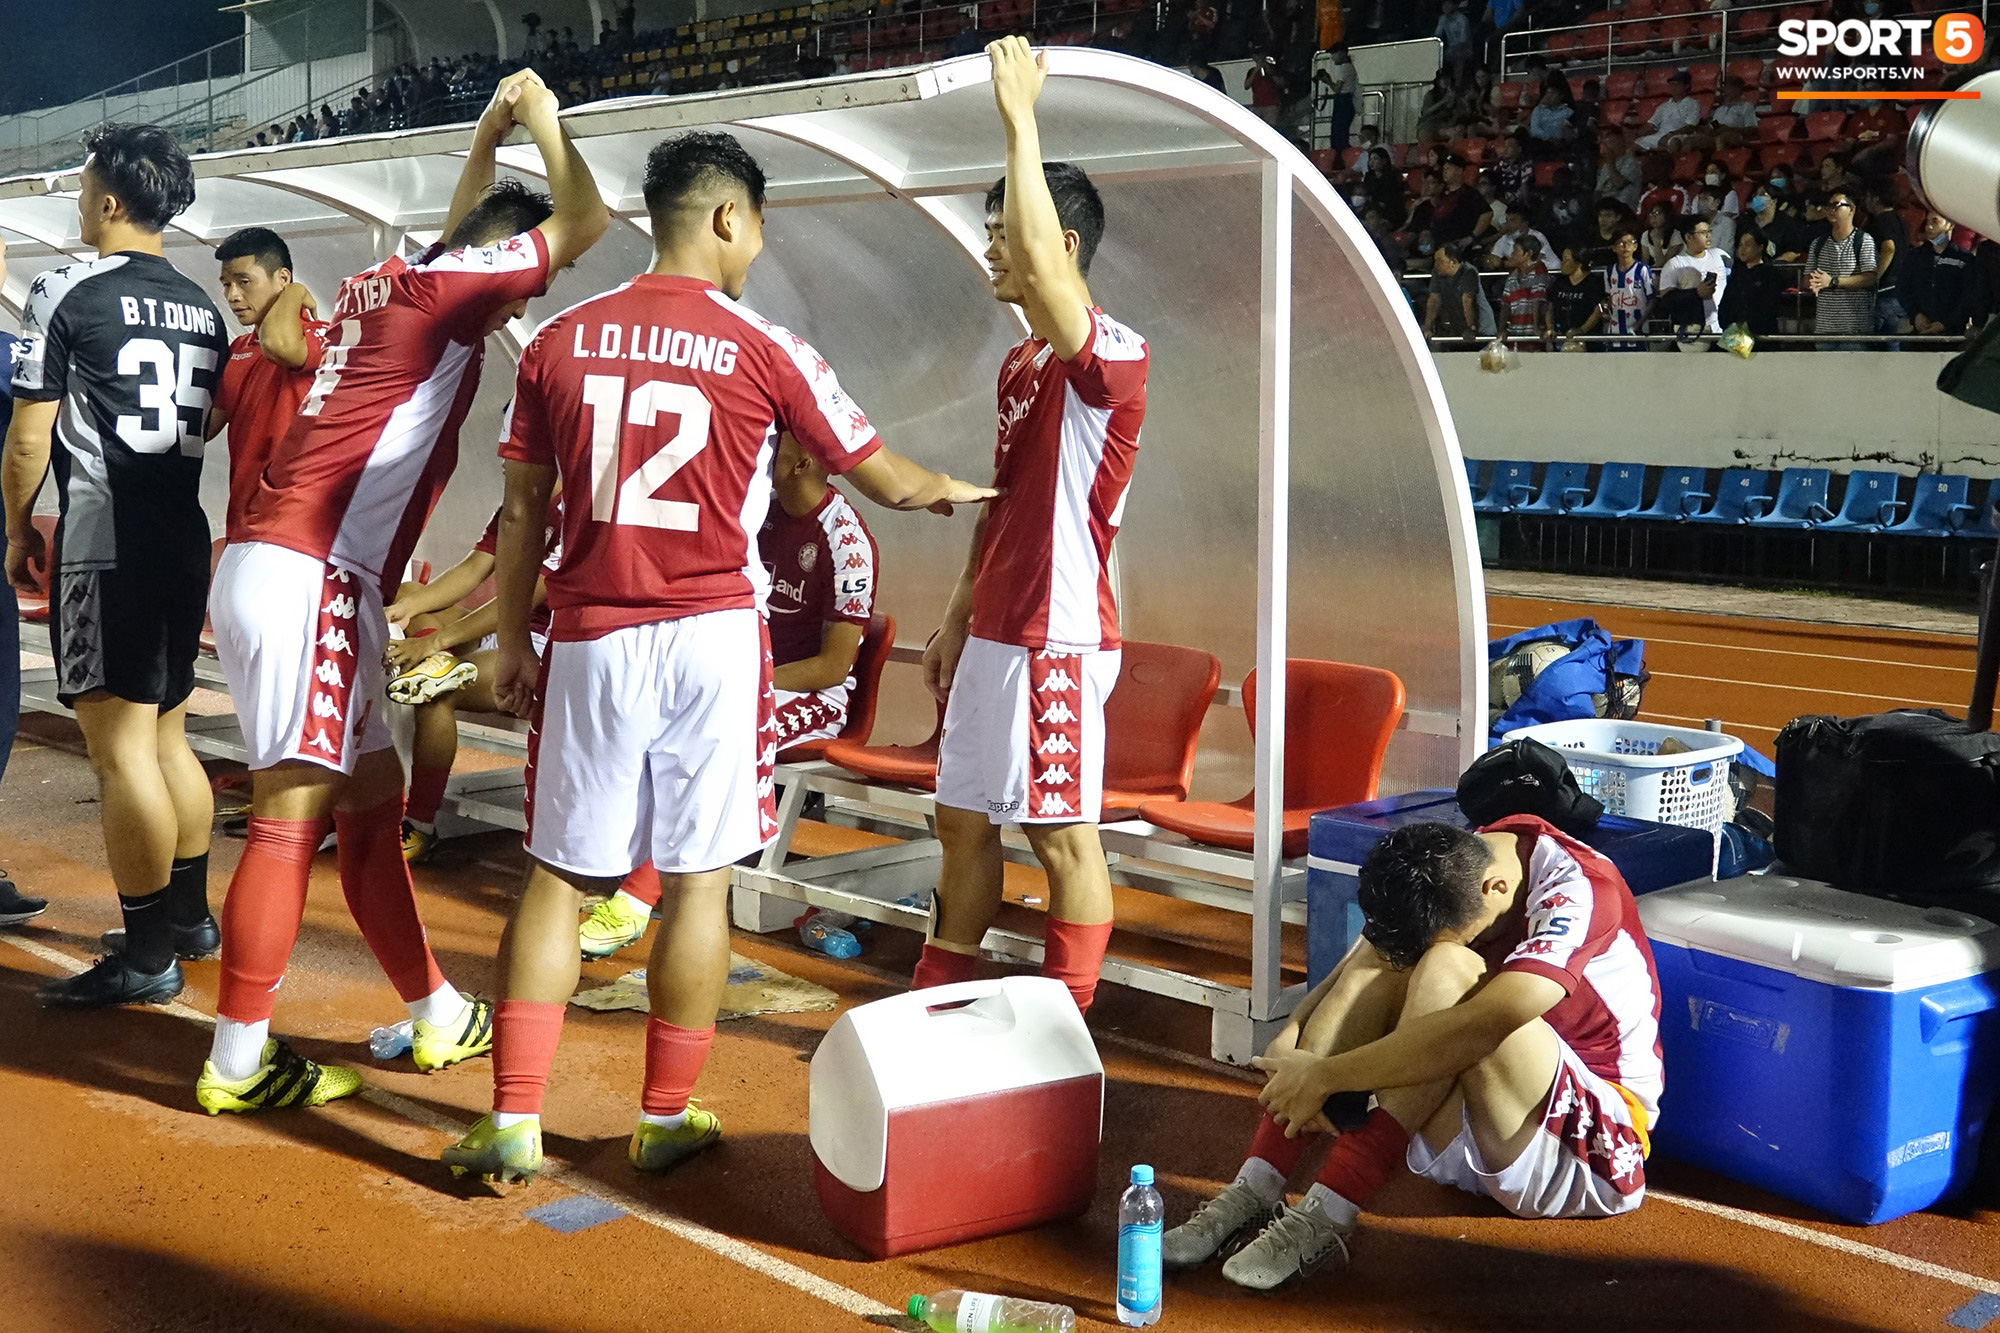 Võ Huy Toàn chấn thương nặng hơn dự kiến, cố thi đấu dù không có cảm giác bóng  - Ảnh 5.